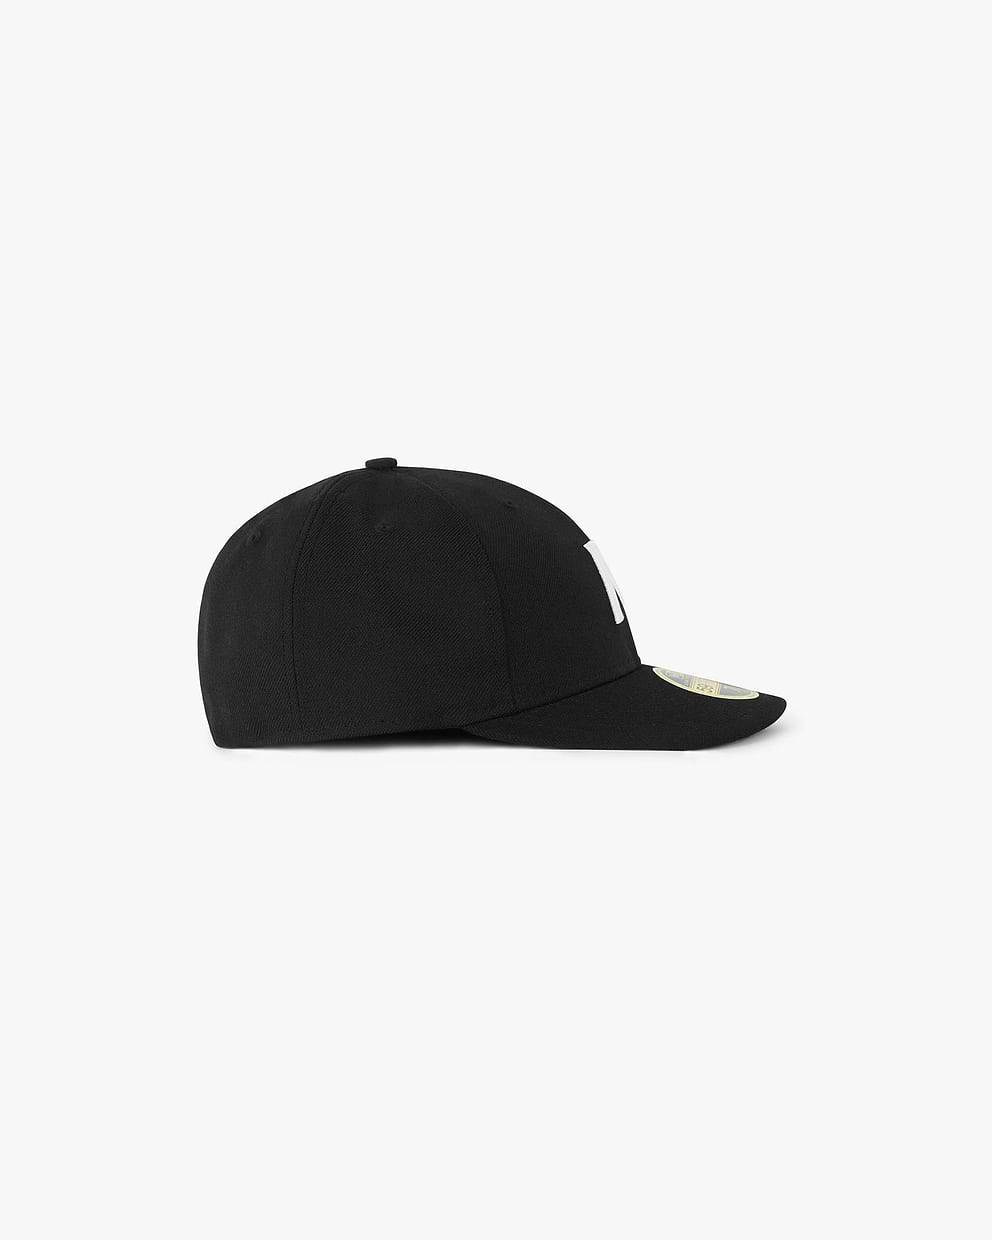 Initial New Era 59Fifty Cap - Black